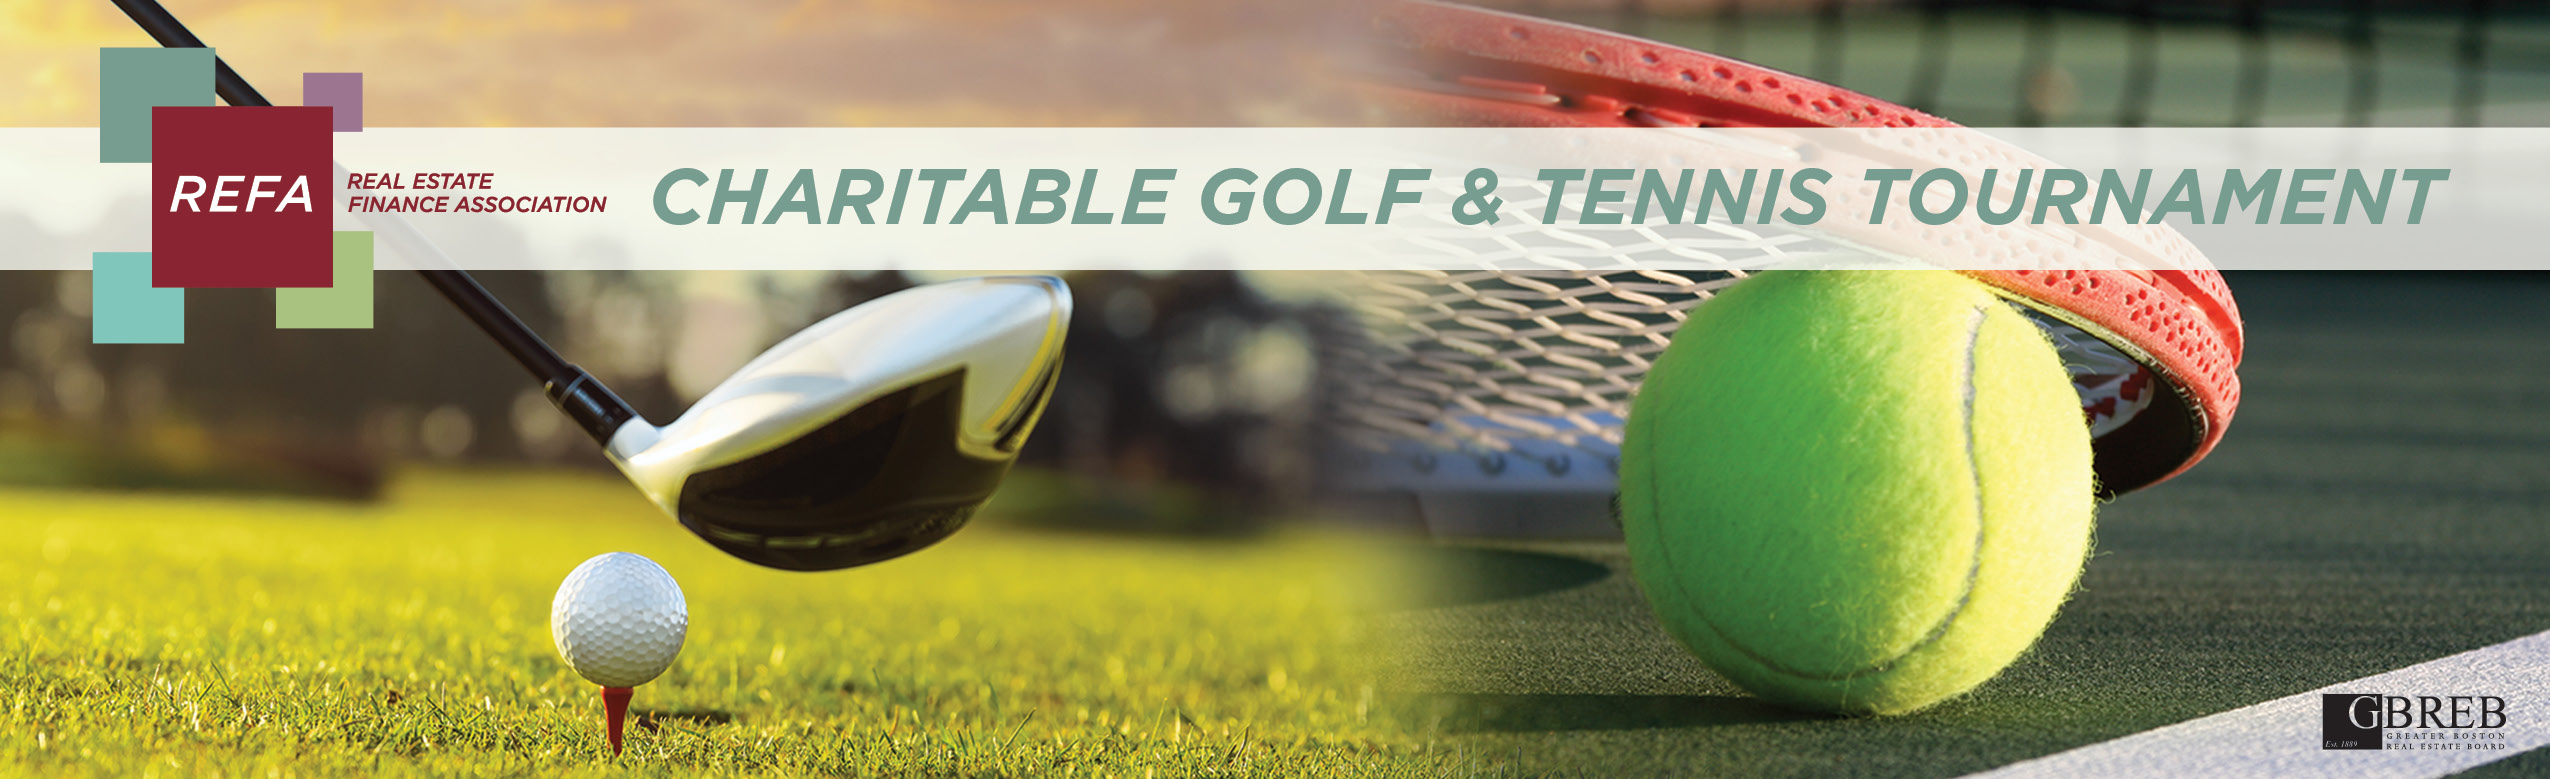 Annual REFA Charitable Golf & Tennis Tournament